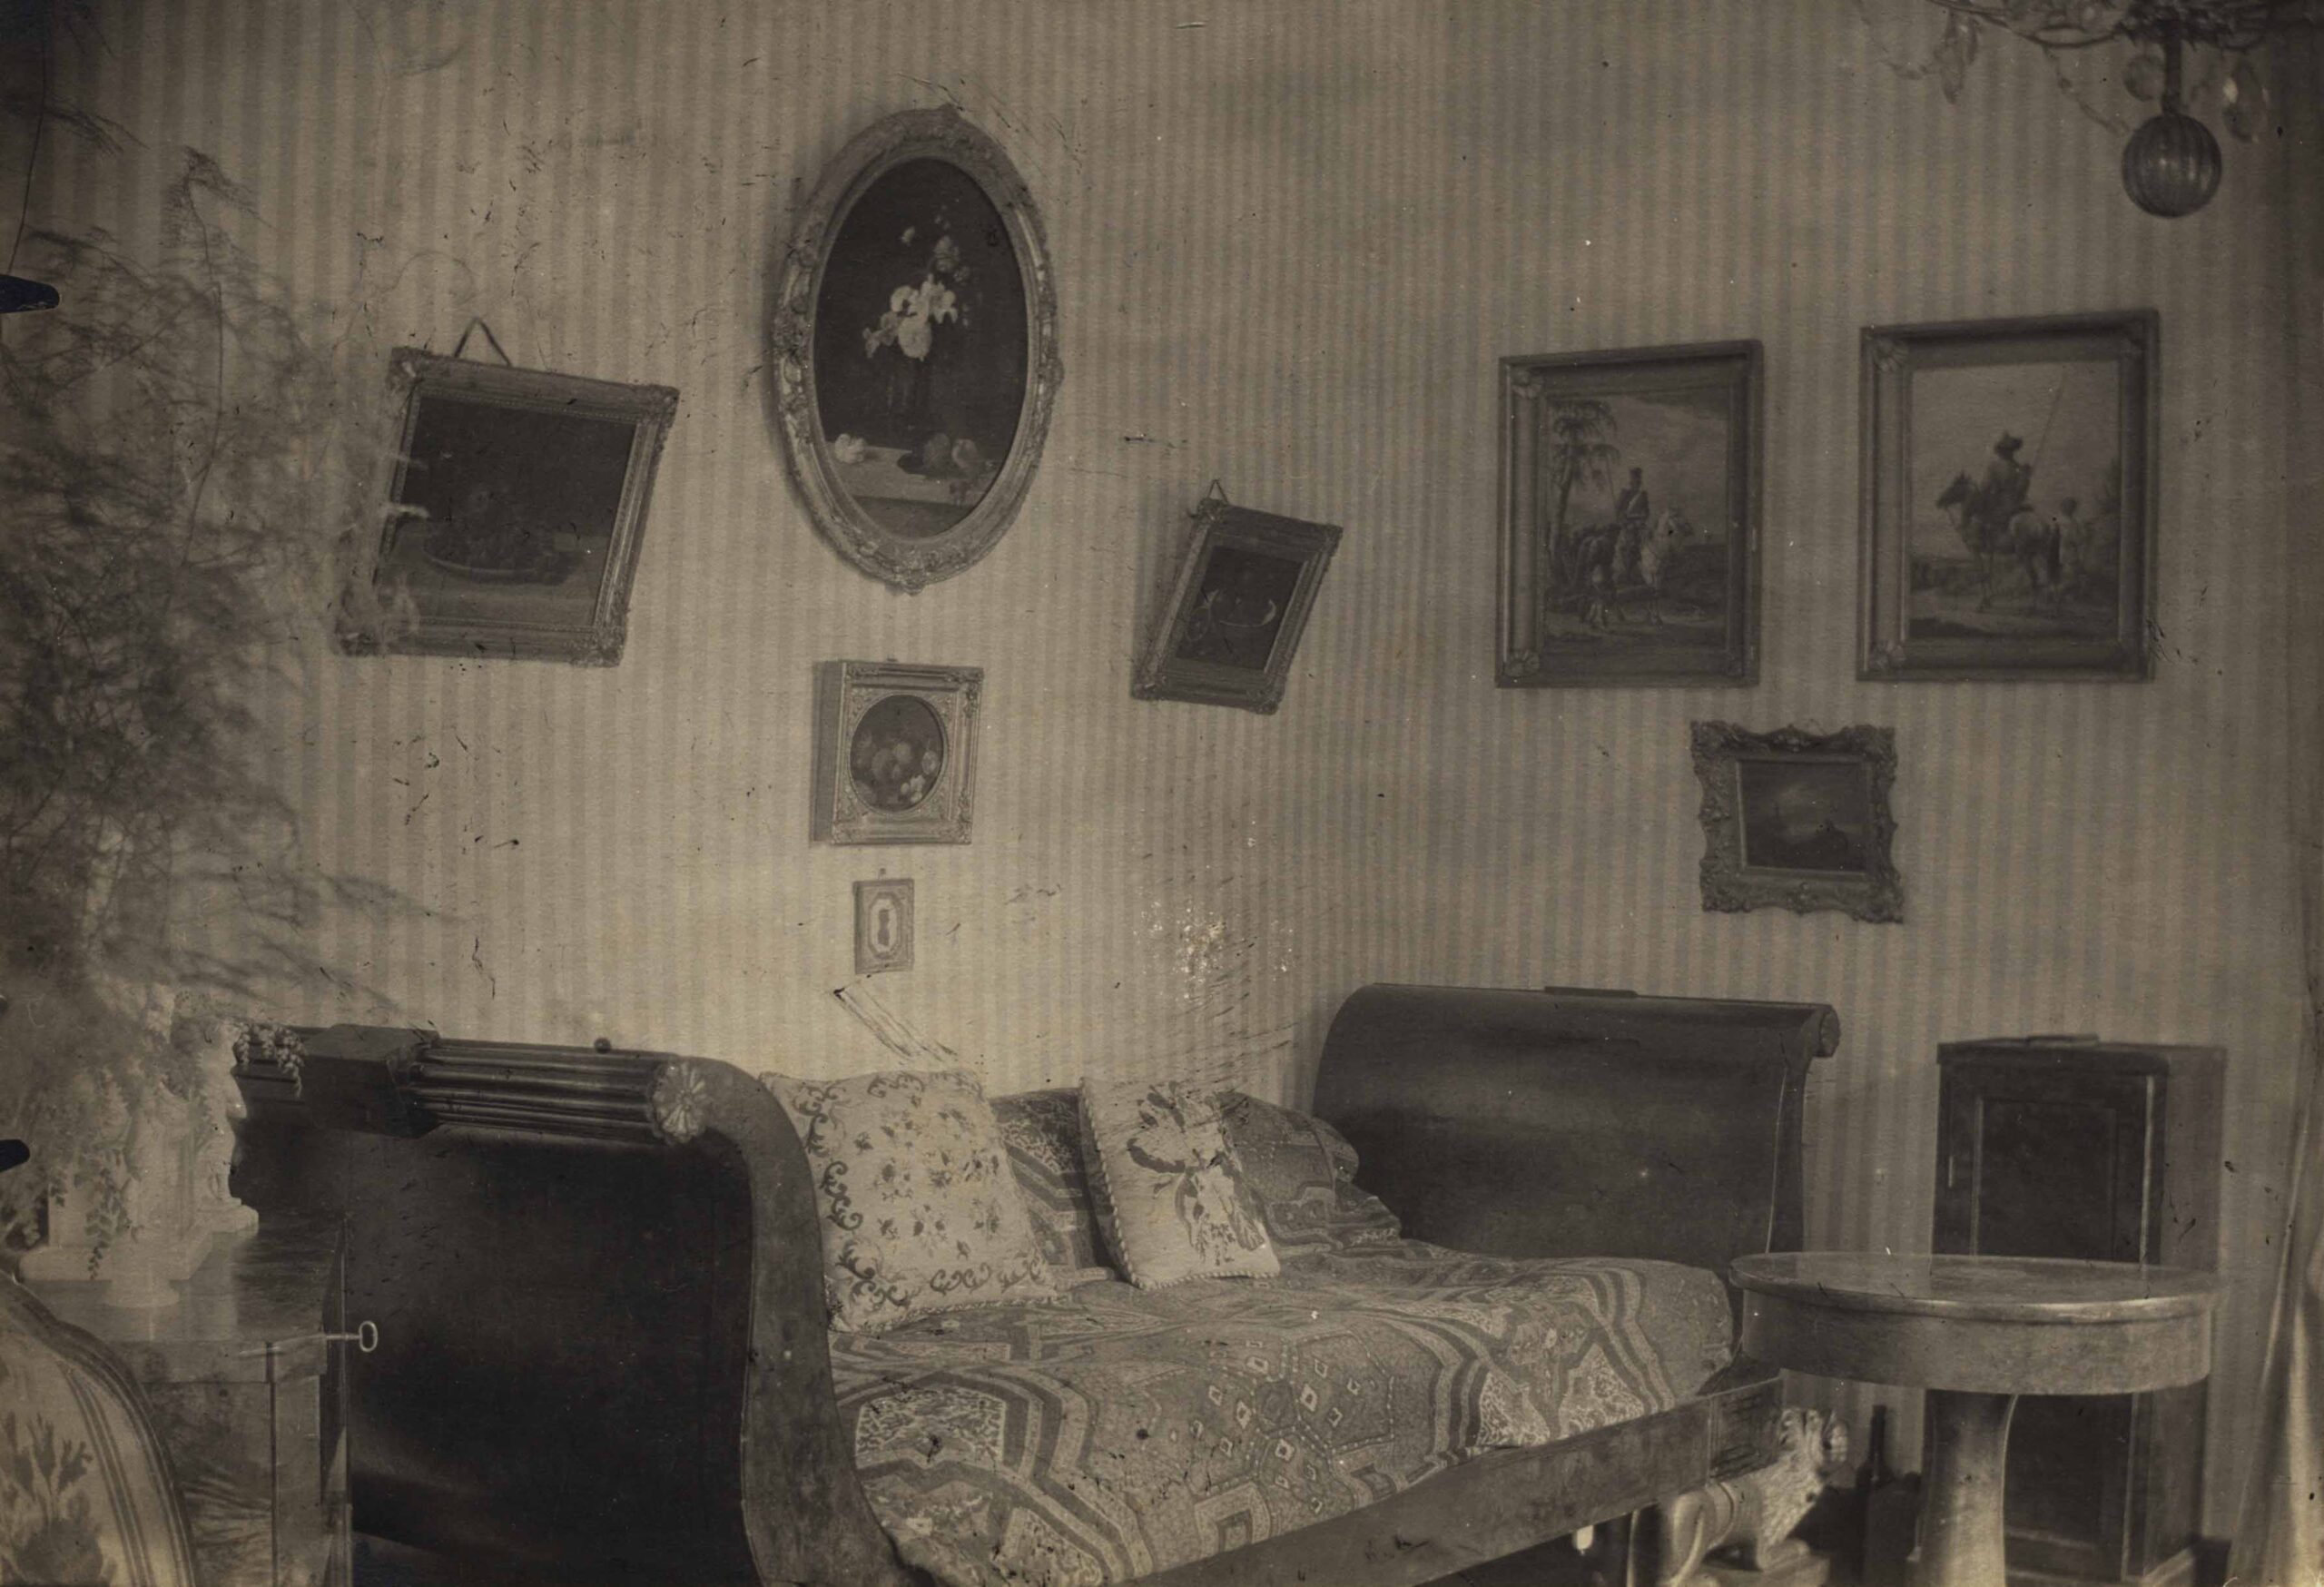 Фотография одного из залов усадьбы Бектышево (ПЗМ 226332)1910-е гг. Переяславский музей заповедник. Источник